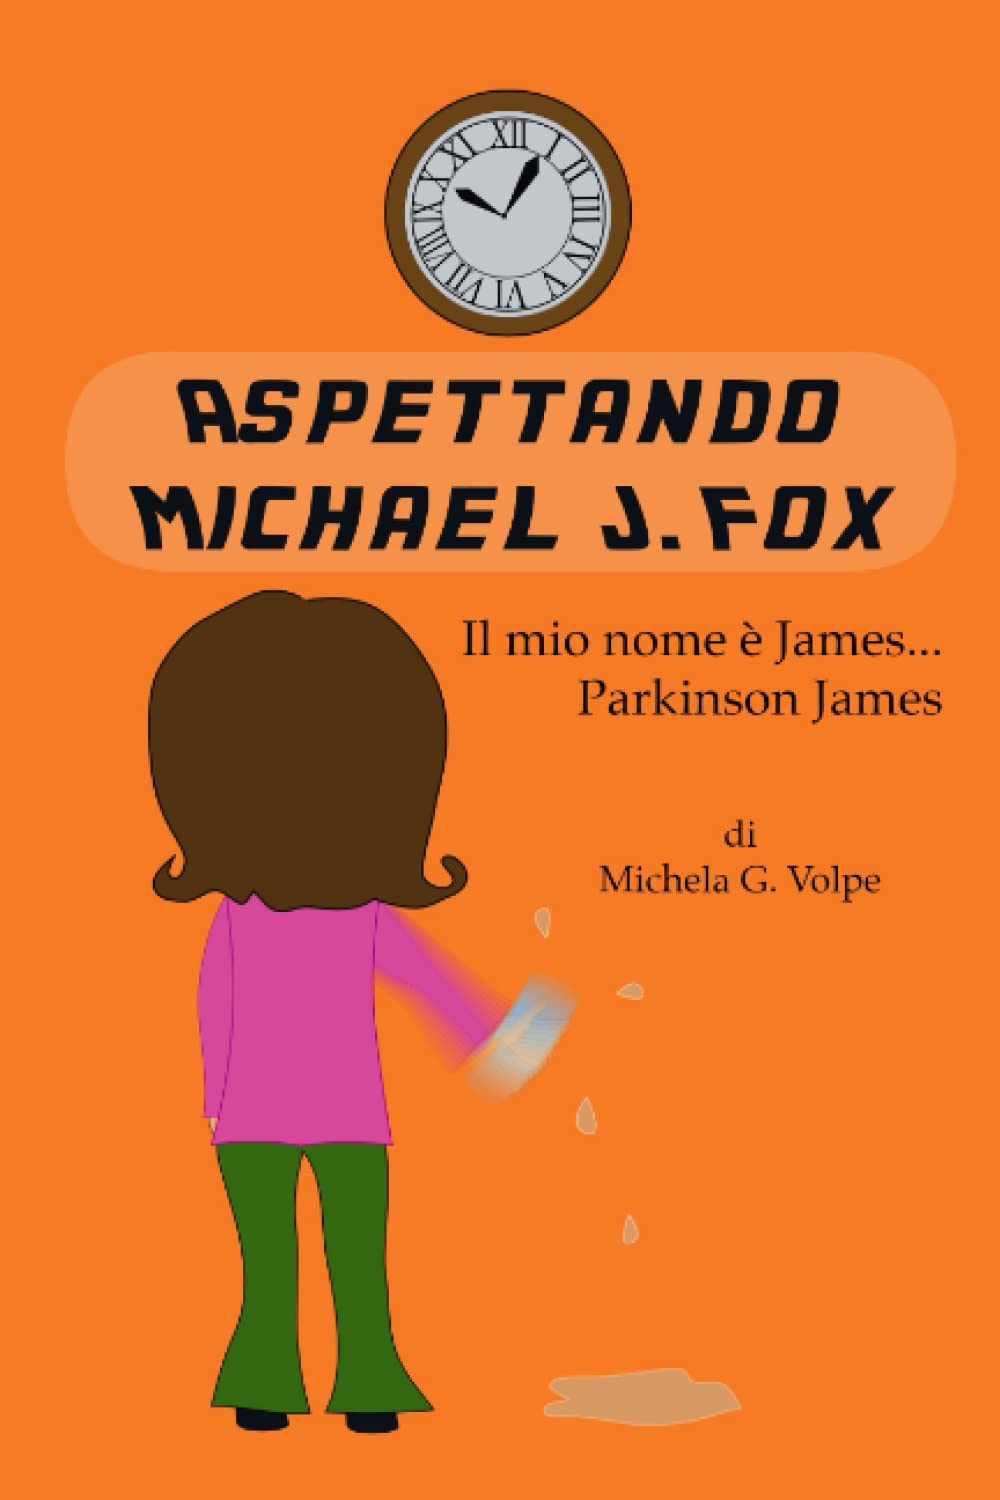 Aspettando Michael J. Fox di Michela G. Volpe – Recensione